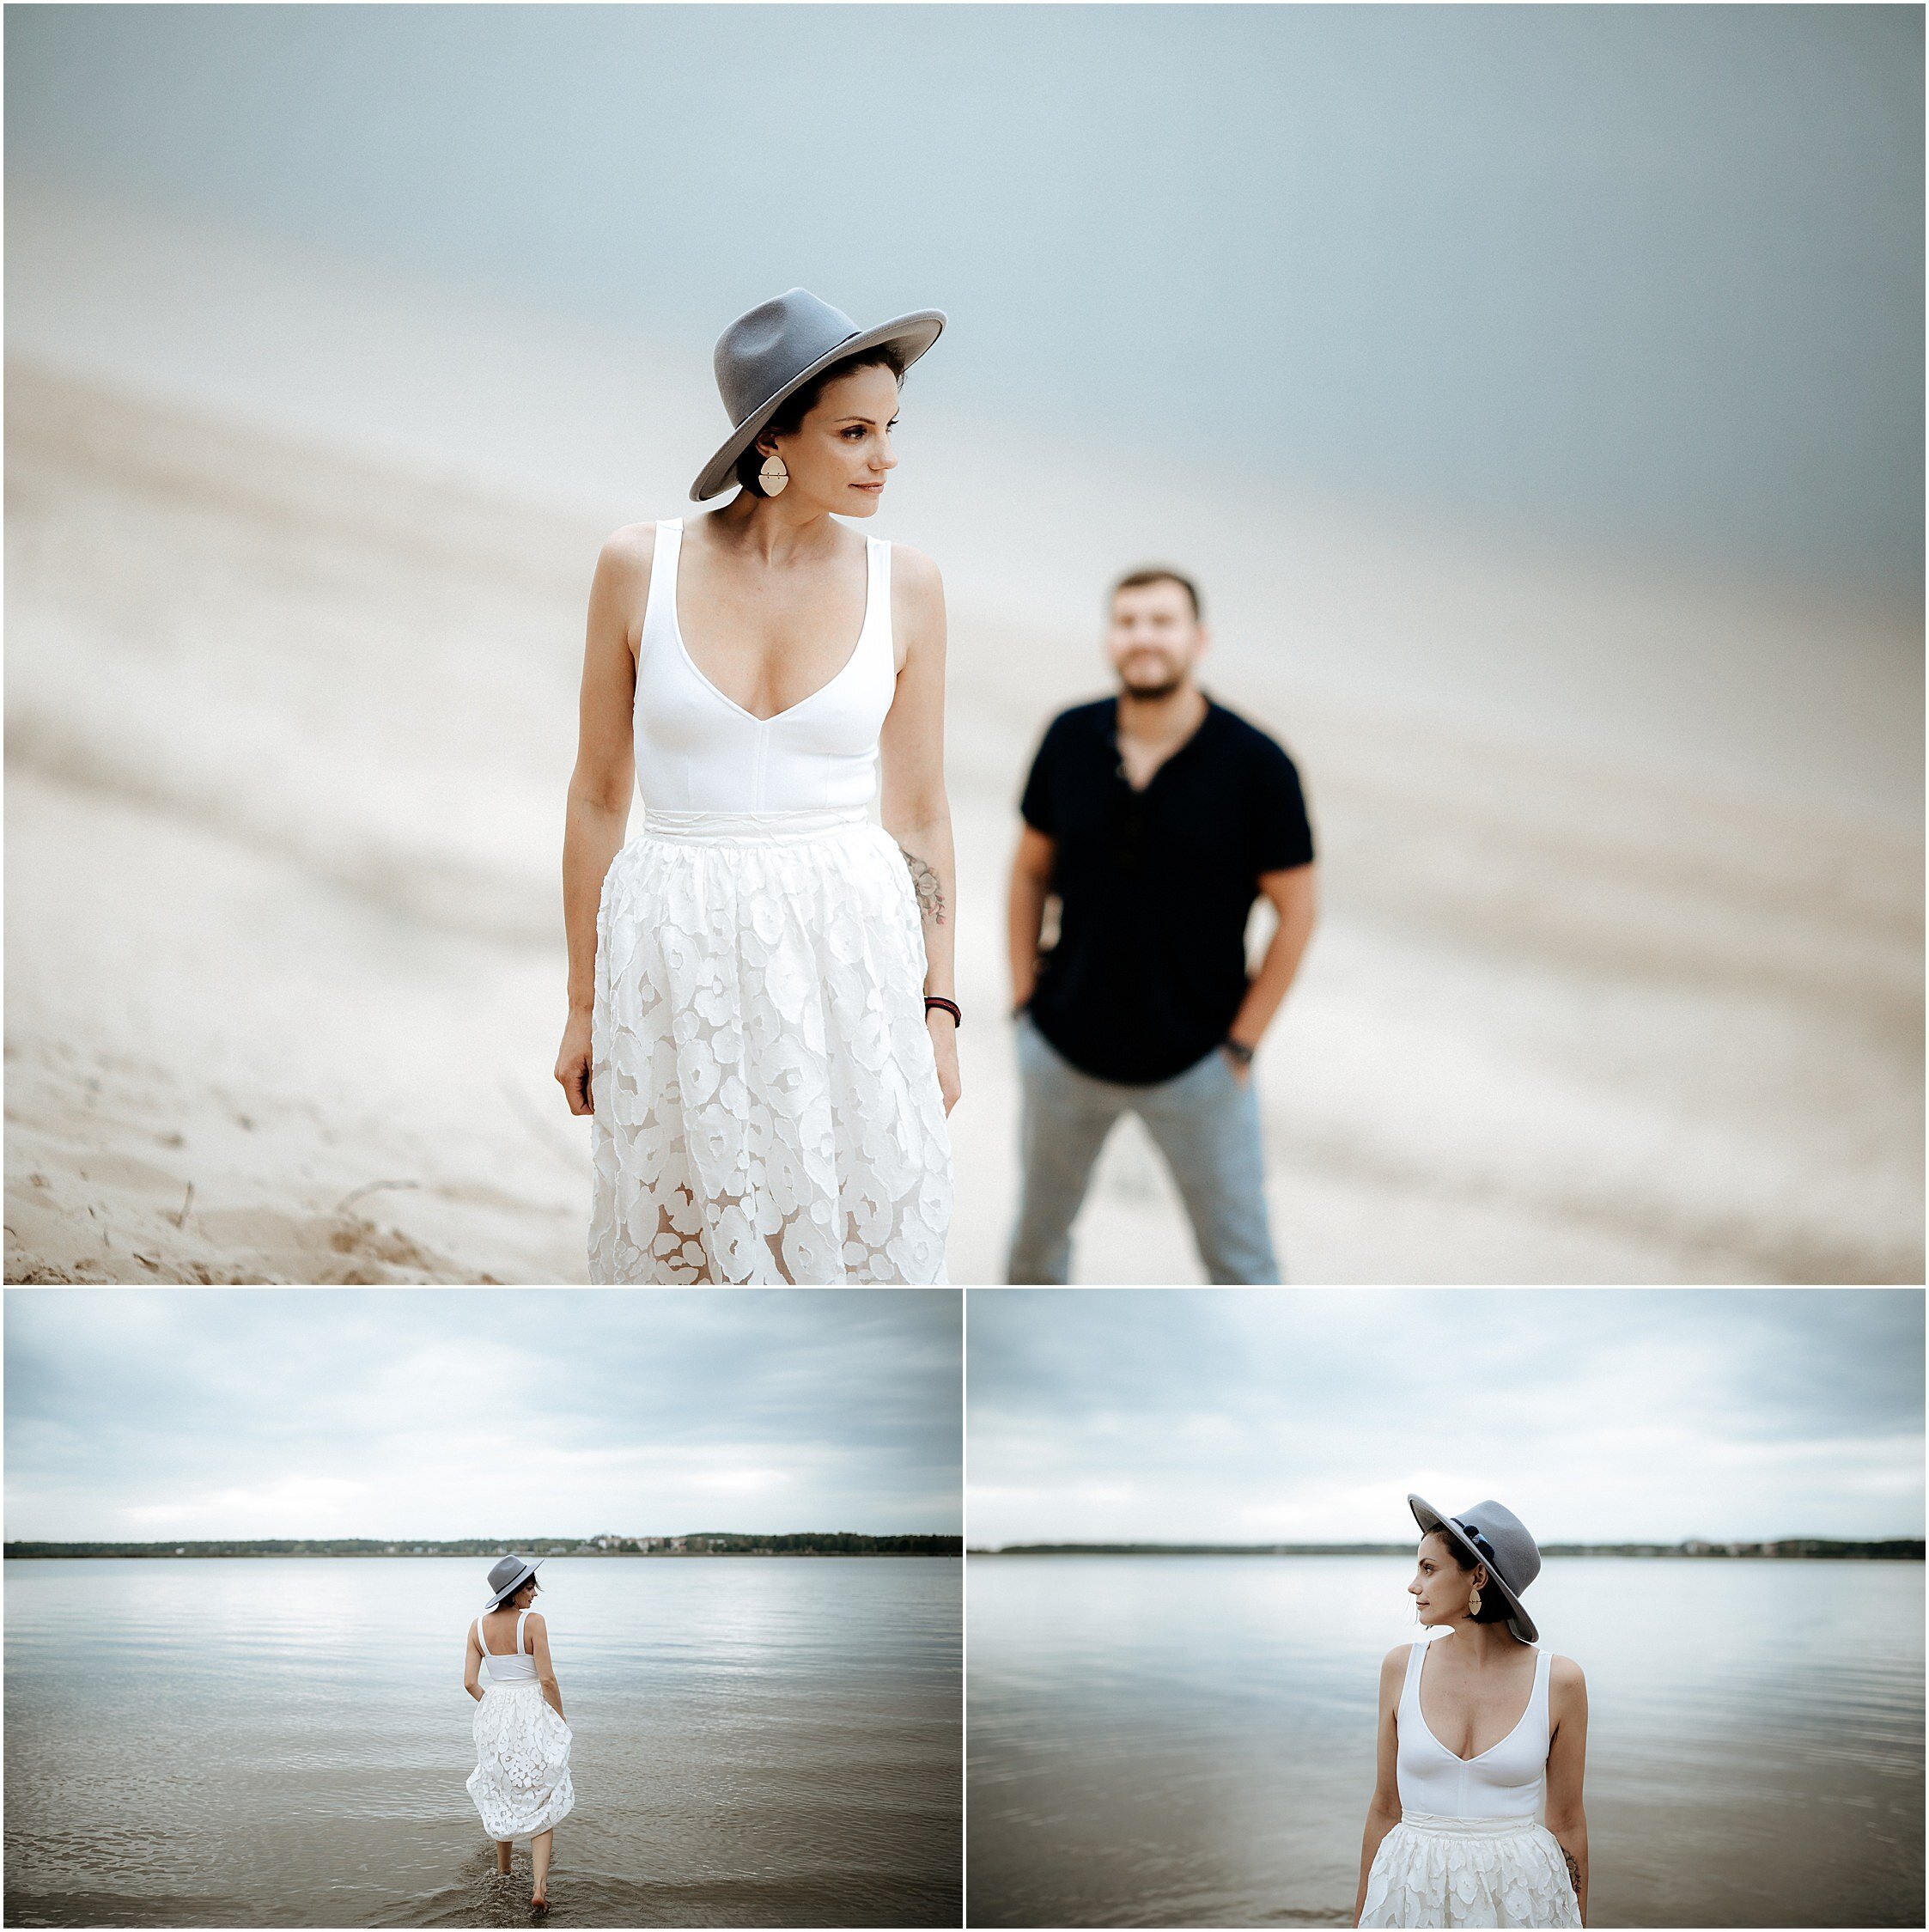 Zanda+Auckland+wedding+photographer+romantic+couple+portrait++white+sand+dunes+Europe+Latvia+New+Zealand_13.jpeg